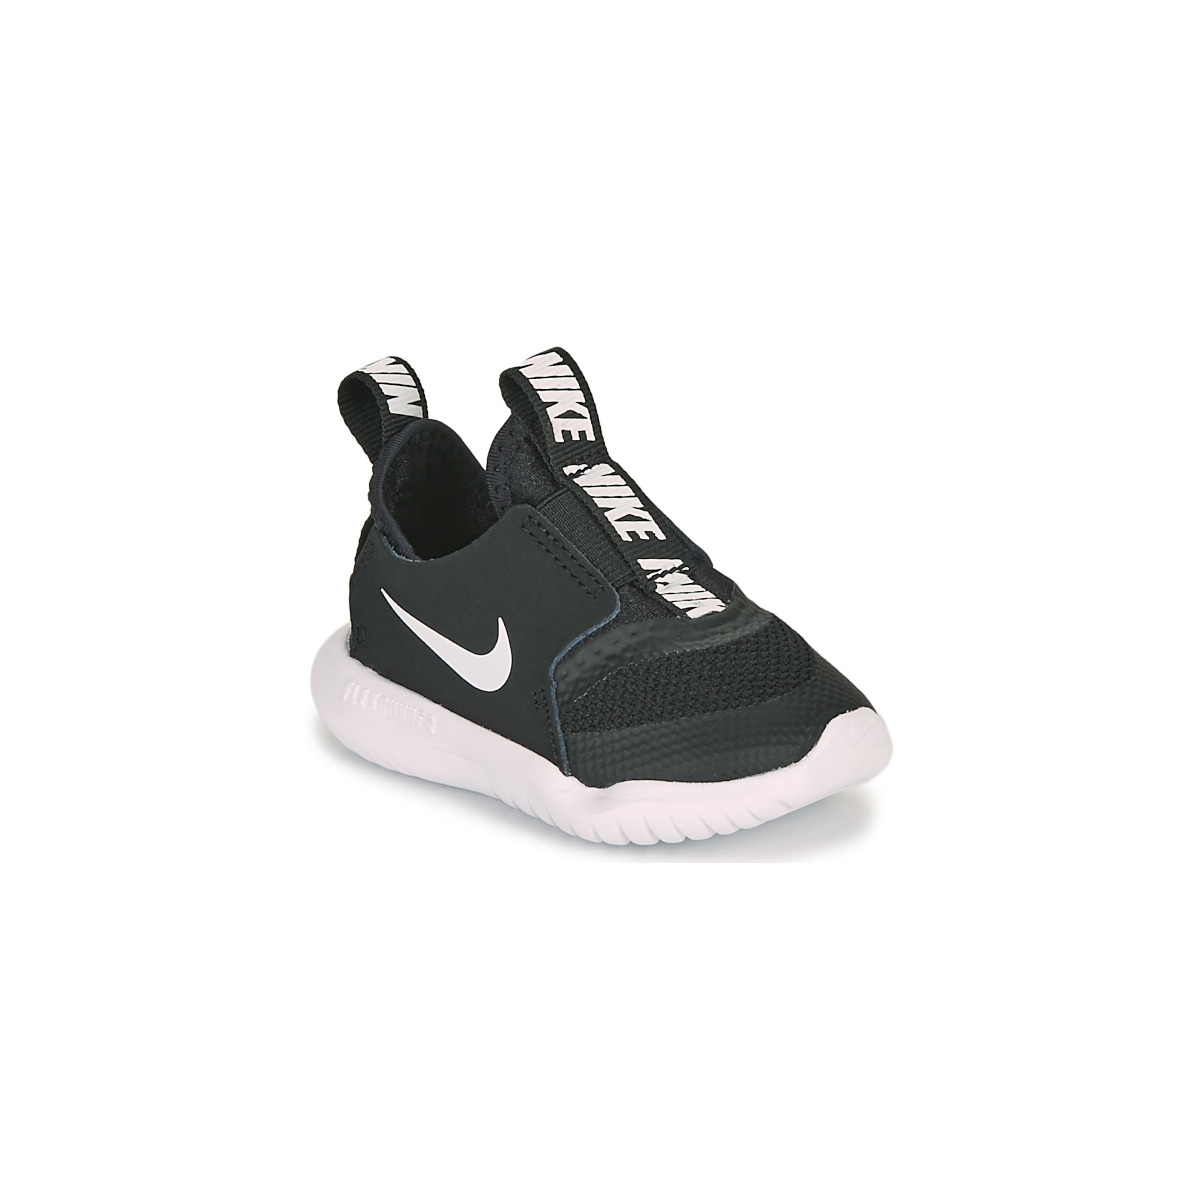 Chaussures de sport Nike FLEX RUNNER TD 19008213 1200 A